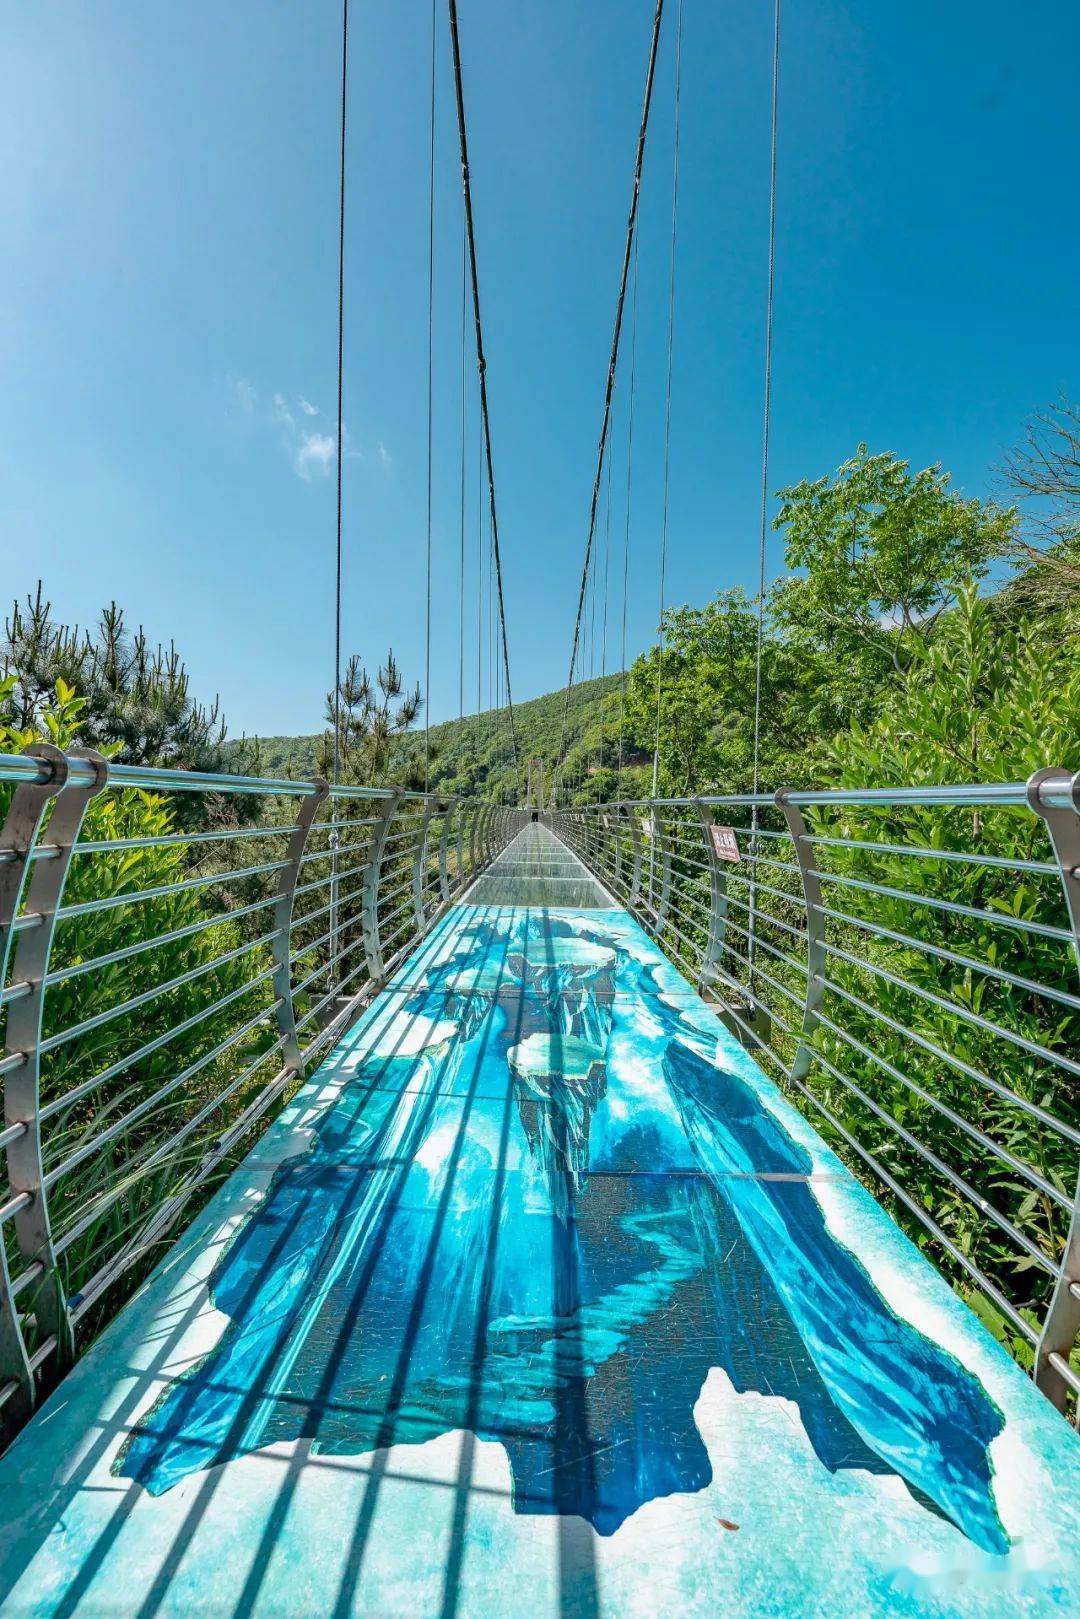 舟山传奇庄园玻璃桥图片